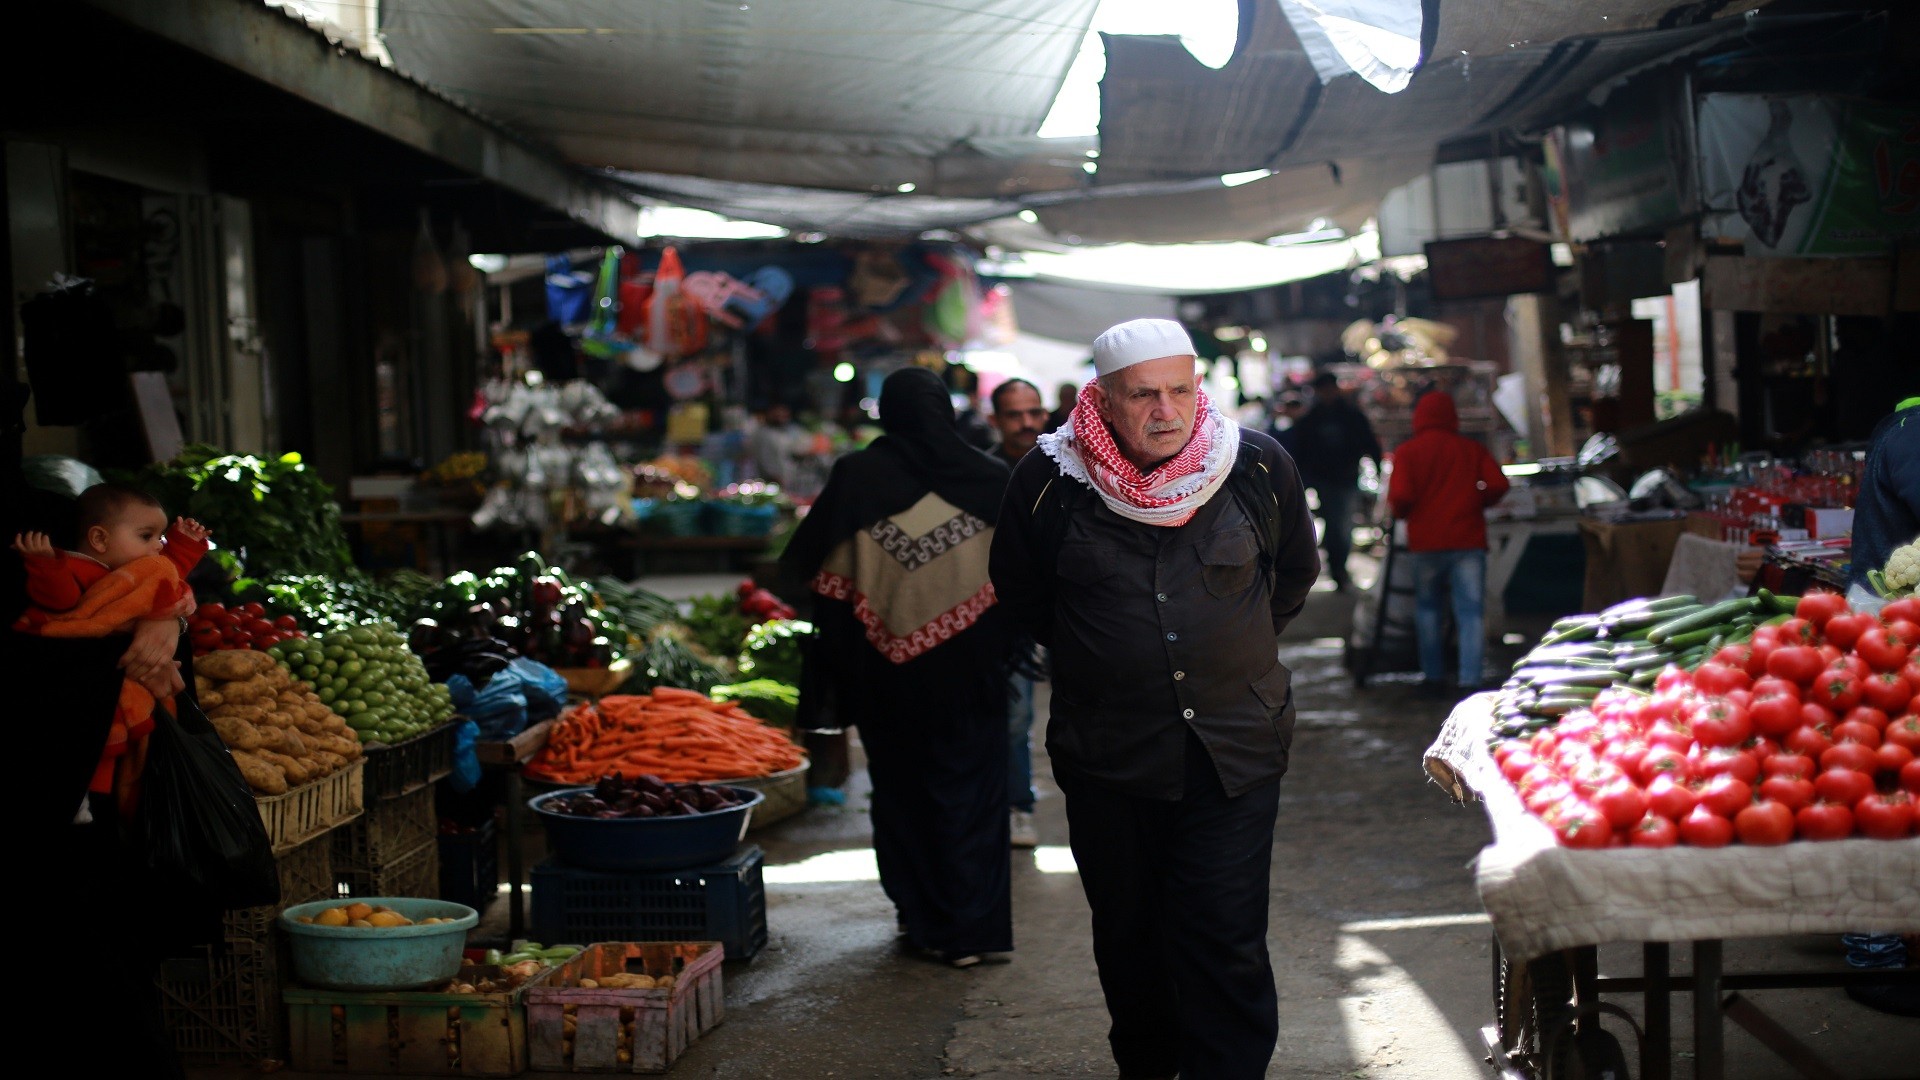 الاقتصاد توضح أسباب ارتفاع أسعار بعض السلع في غزة